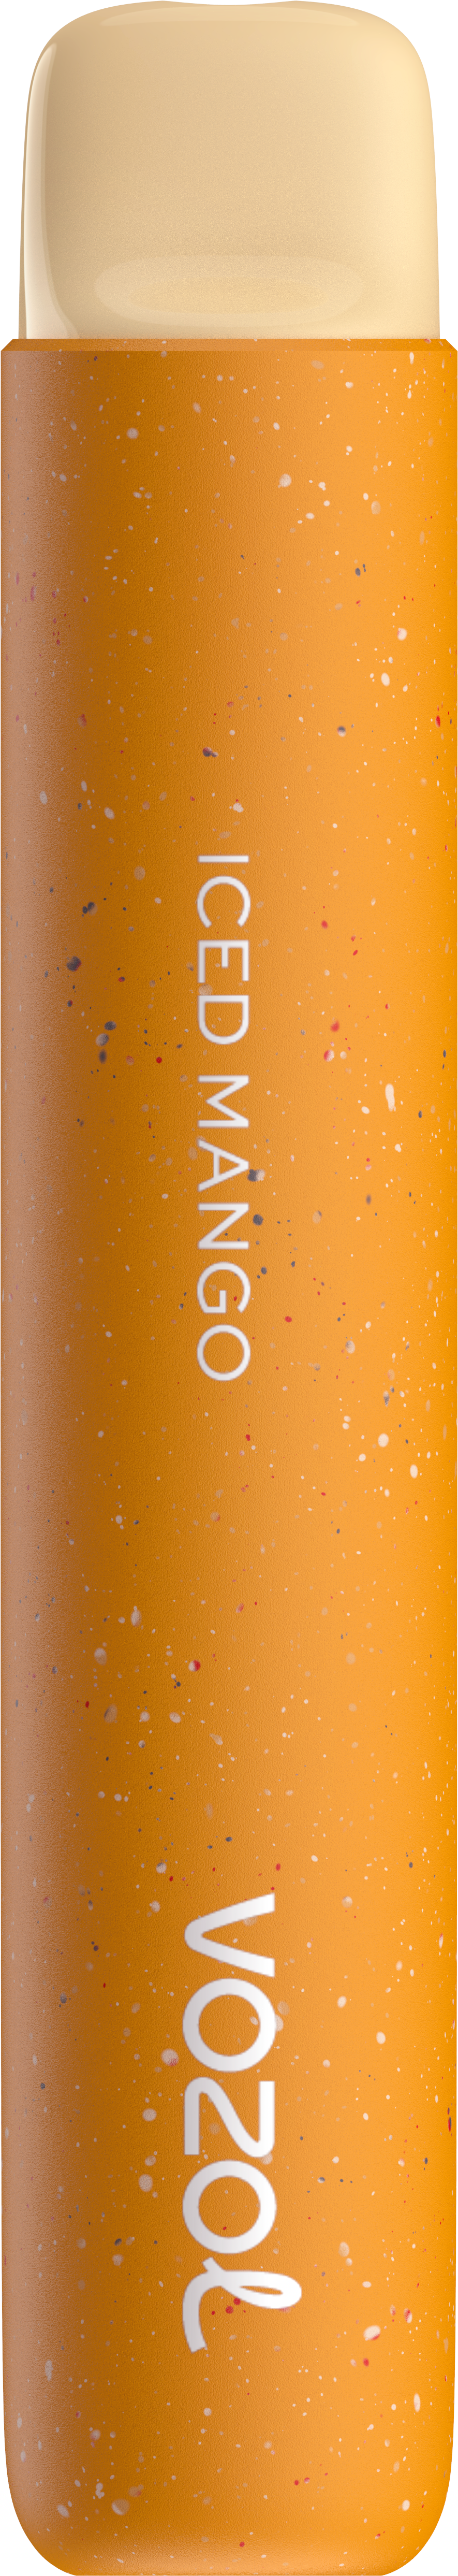 VOZOL Star 600 Iced Mango